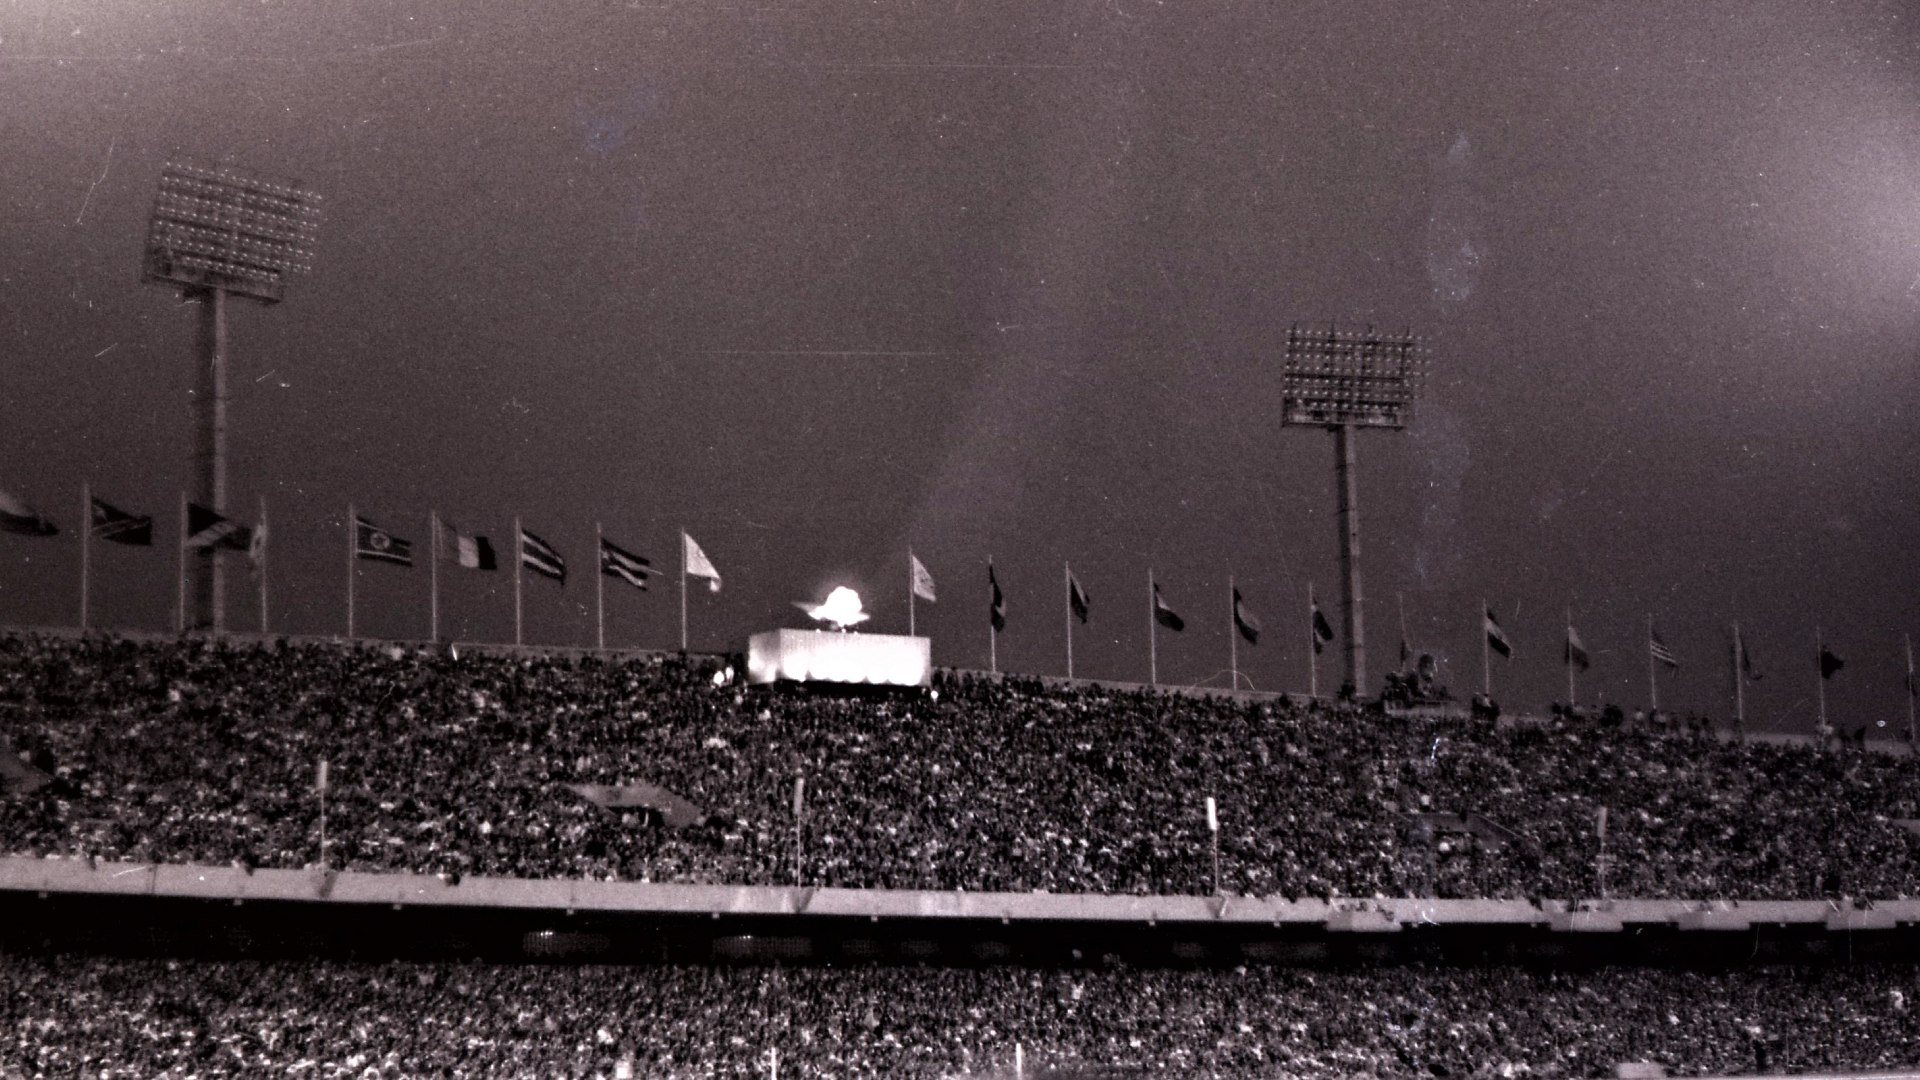 Mexico City 1968 Olympics